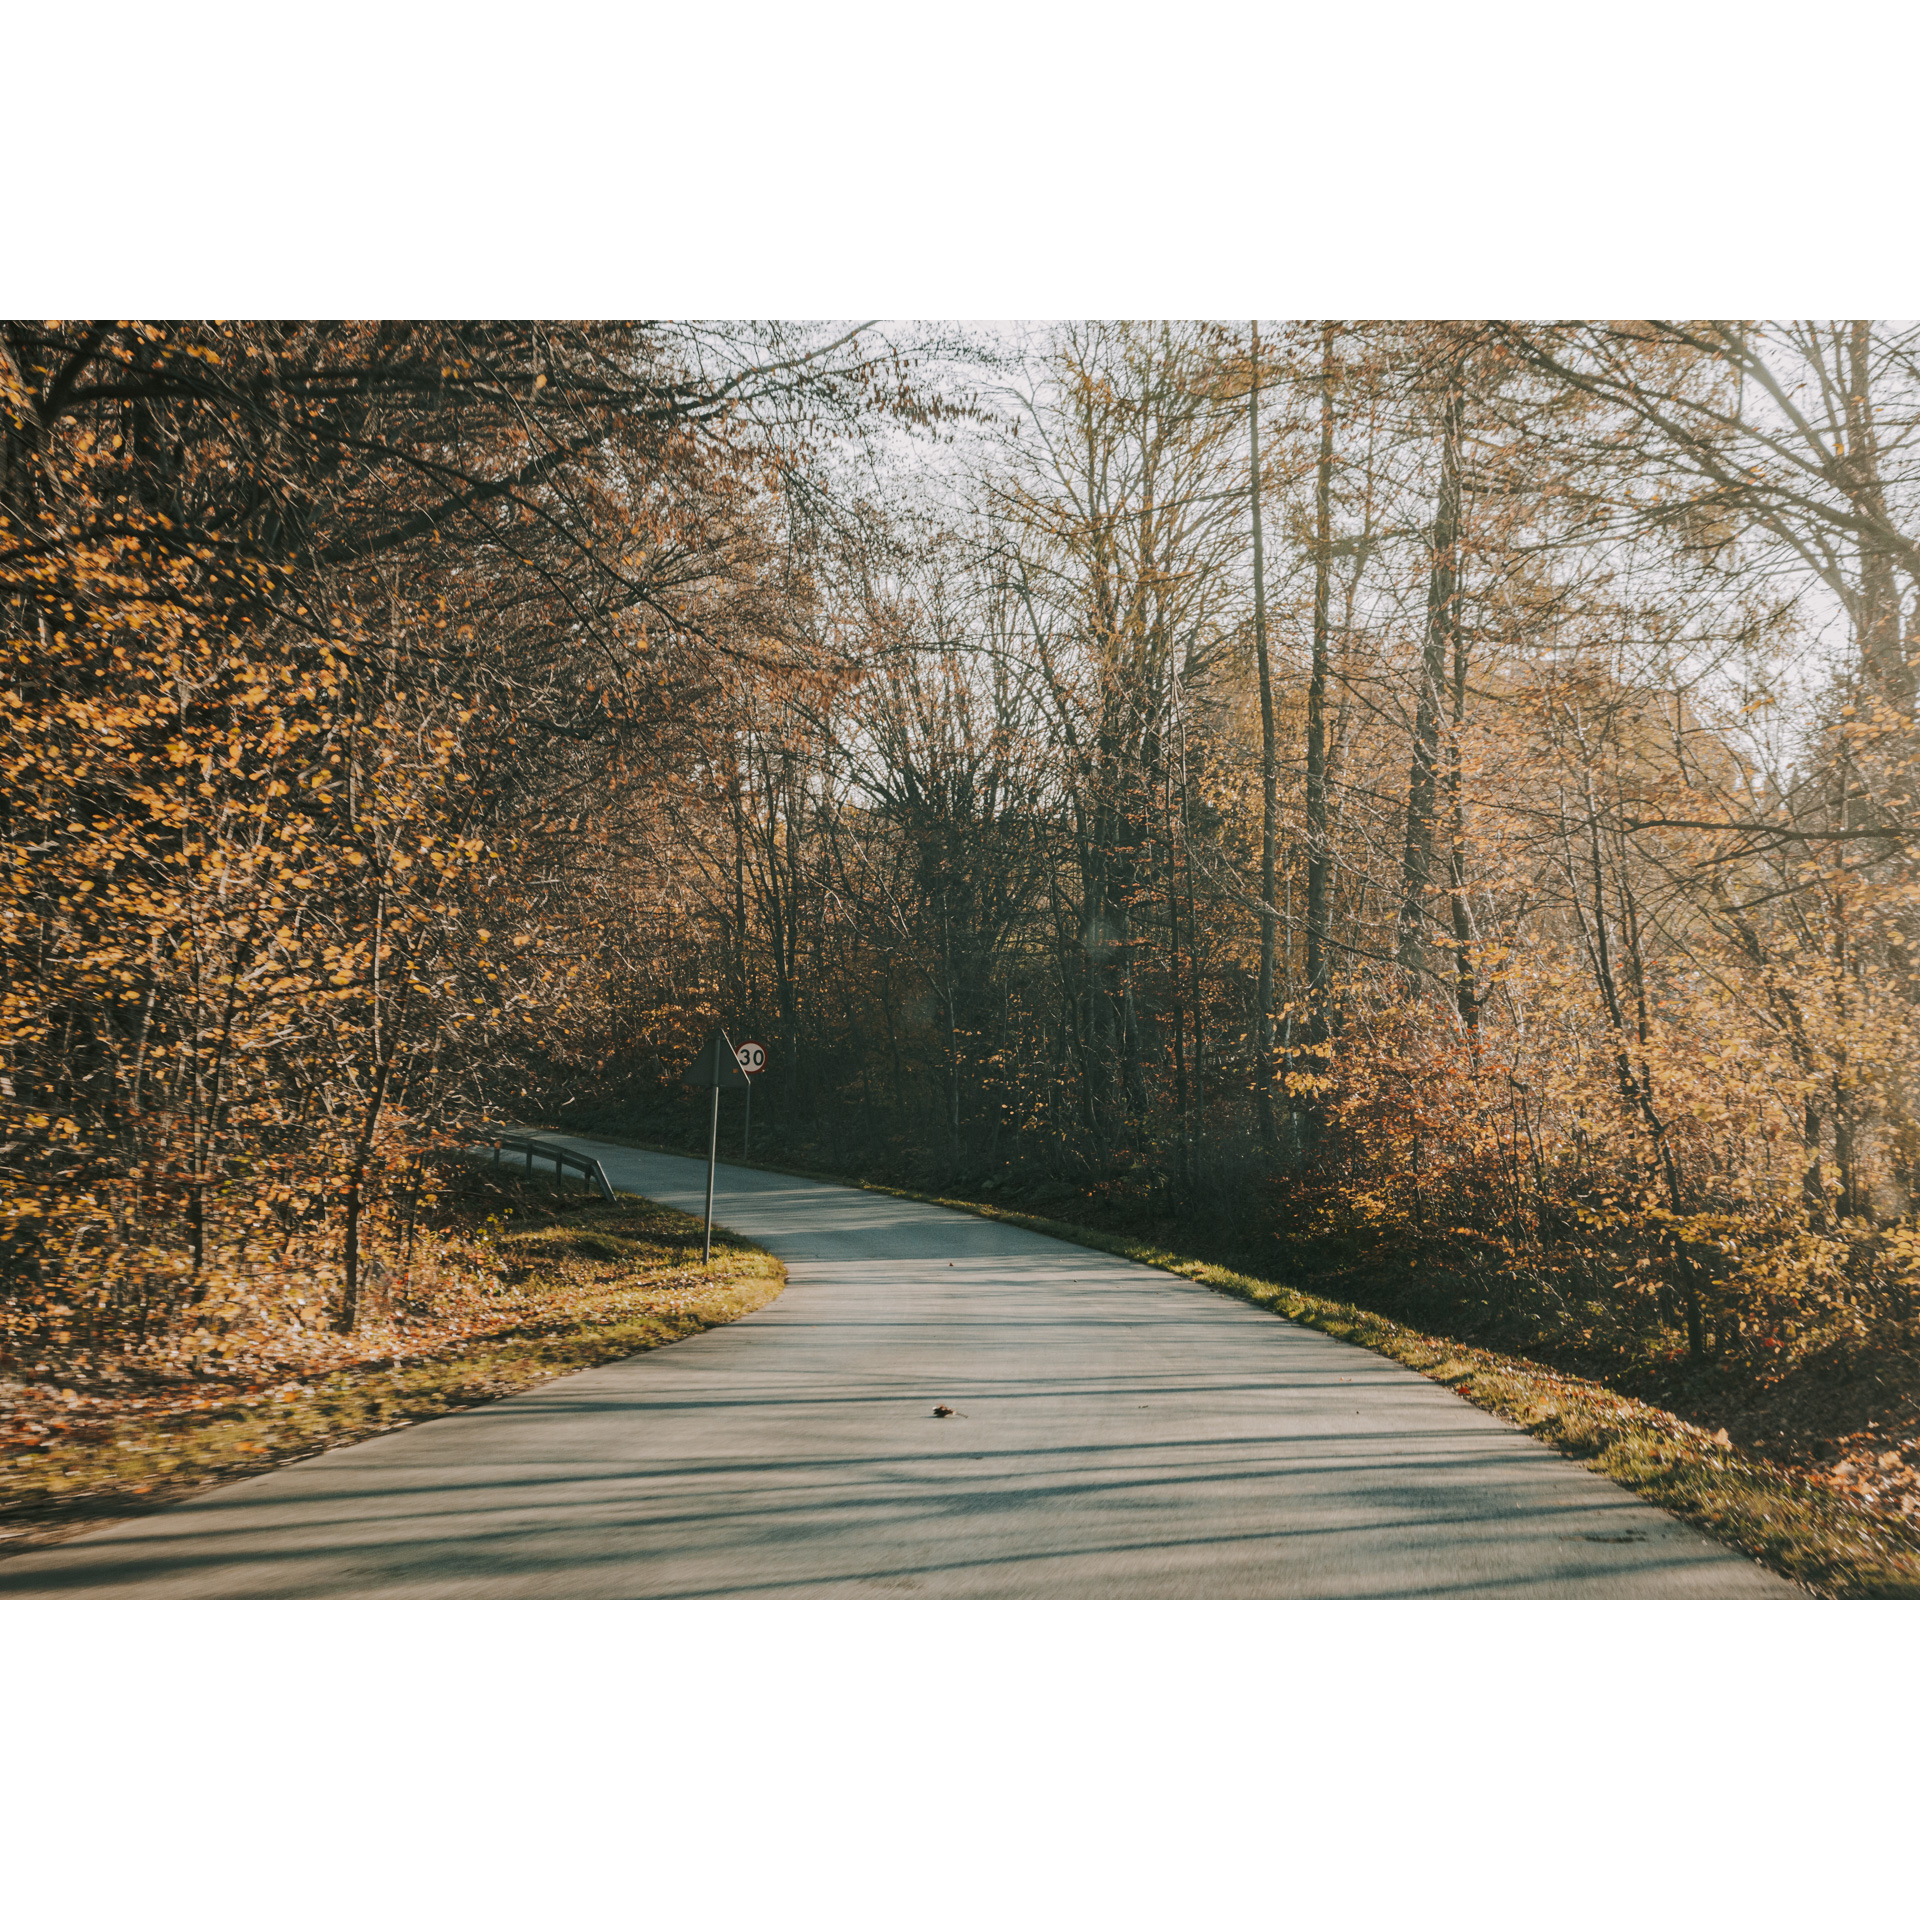 Droga asfaltowa skręcająca w lewo wśród jesiennych liści